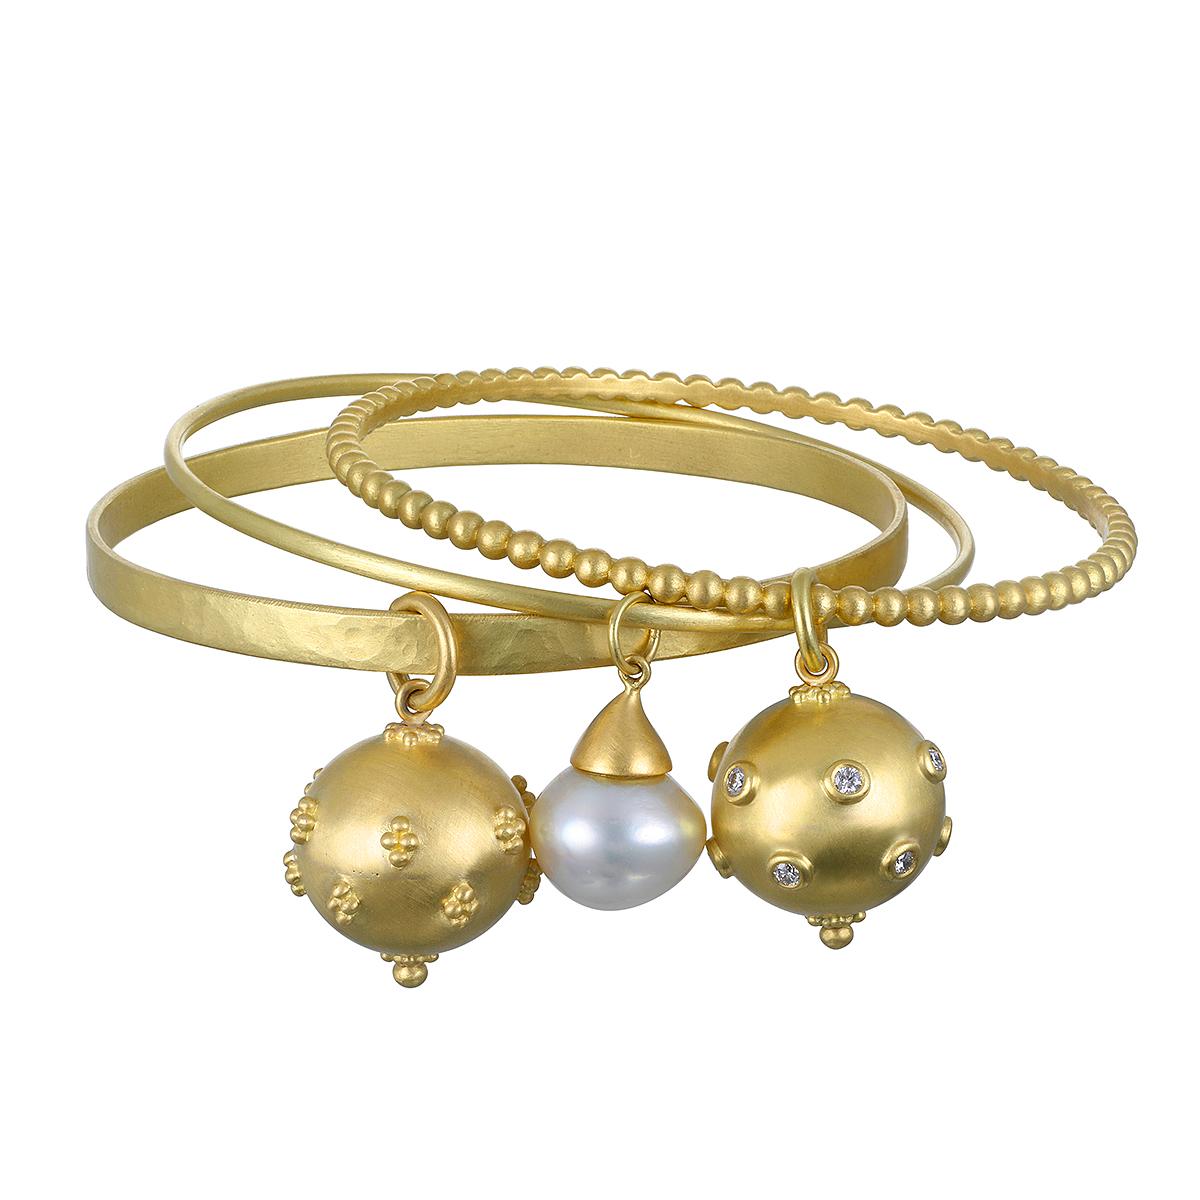 Der 18 Karat Gold Granulation Bead Bangle mit Diamond Ball Charm von Faye Kim sorgt garantiert für Gesprächsstoff, egal ob er allein oder mit anderen Armbändern kombiniert getragen wird.

Durchmesser des Charmes  .75